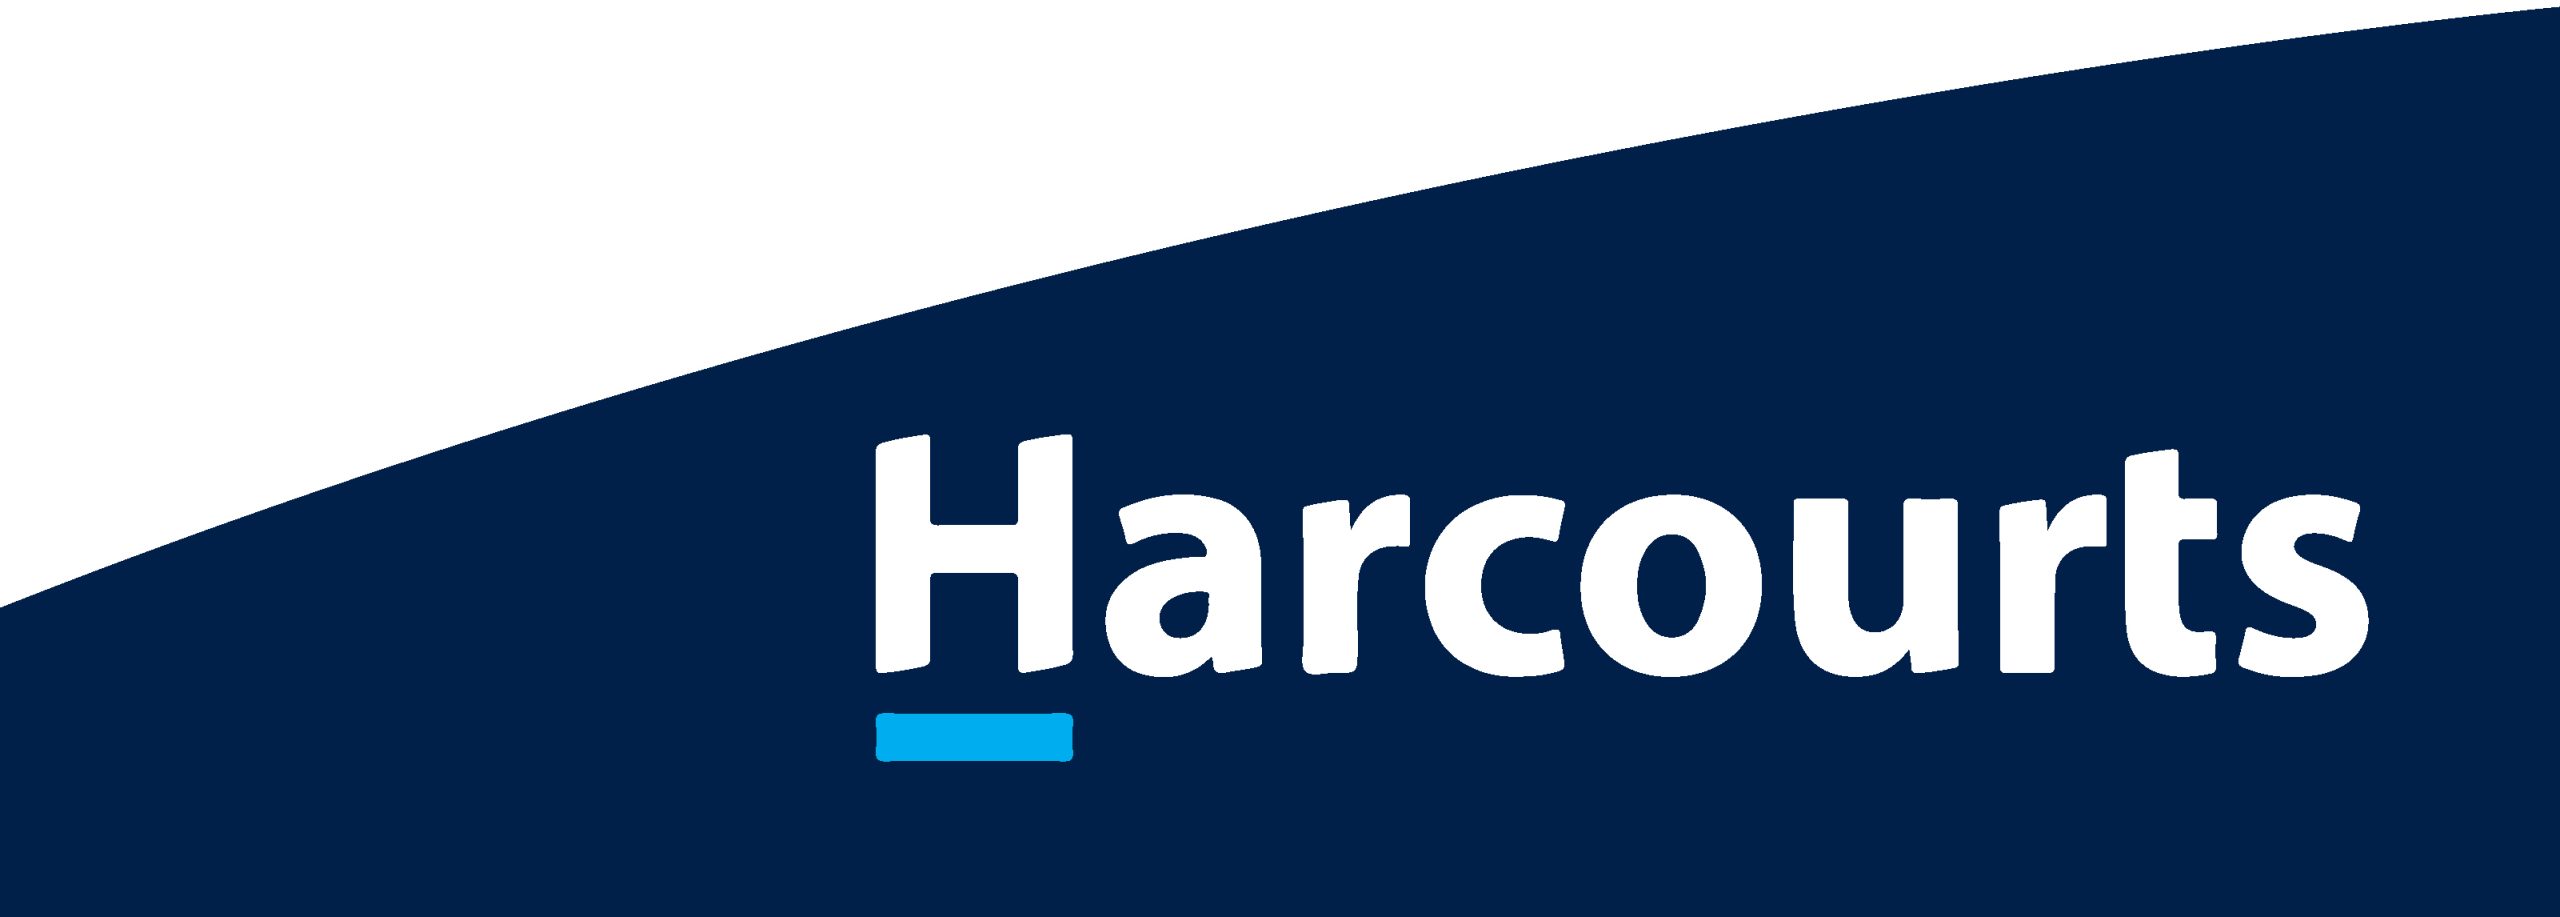 Harcourts curve blue